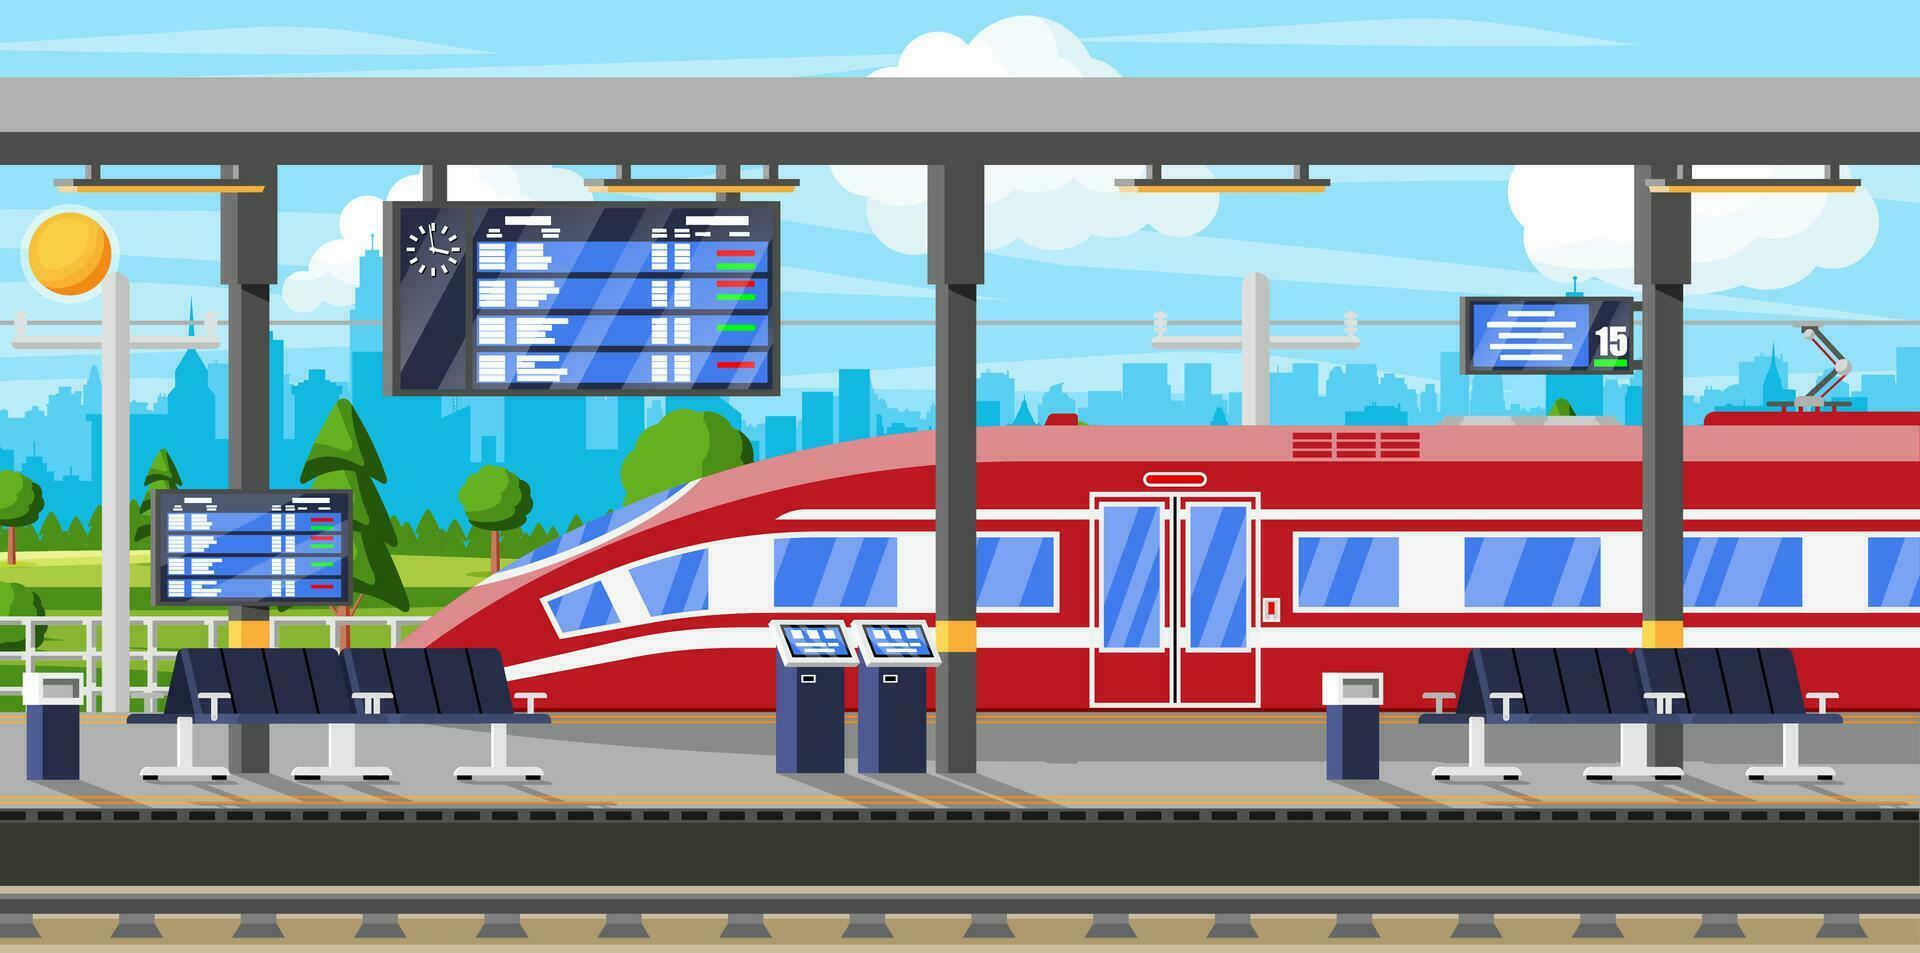 moderno ferrocarril estación con alto velocidad tren y plataforma con cronograma. súper simplificado tren. pasajero Rápido ferrocarril locomotora. ferrocarril público transporte subterraneo. plano vector ilustración